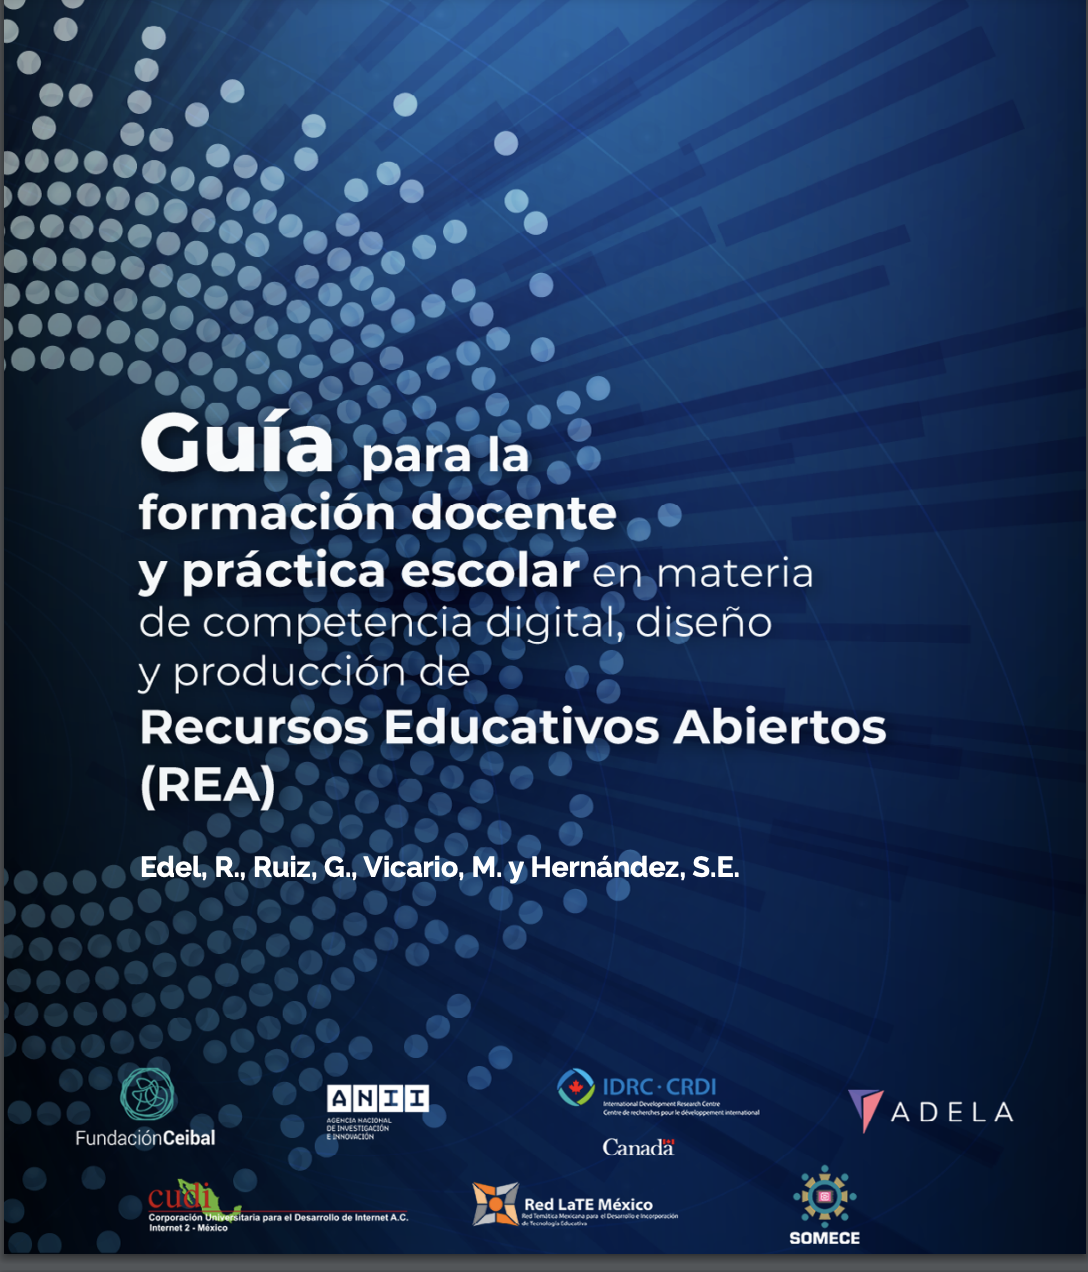 Guía para la formación docente y práctica escolar en materia de competencia digital, diseño y producción de Recursos Educativos Abiertos